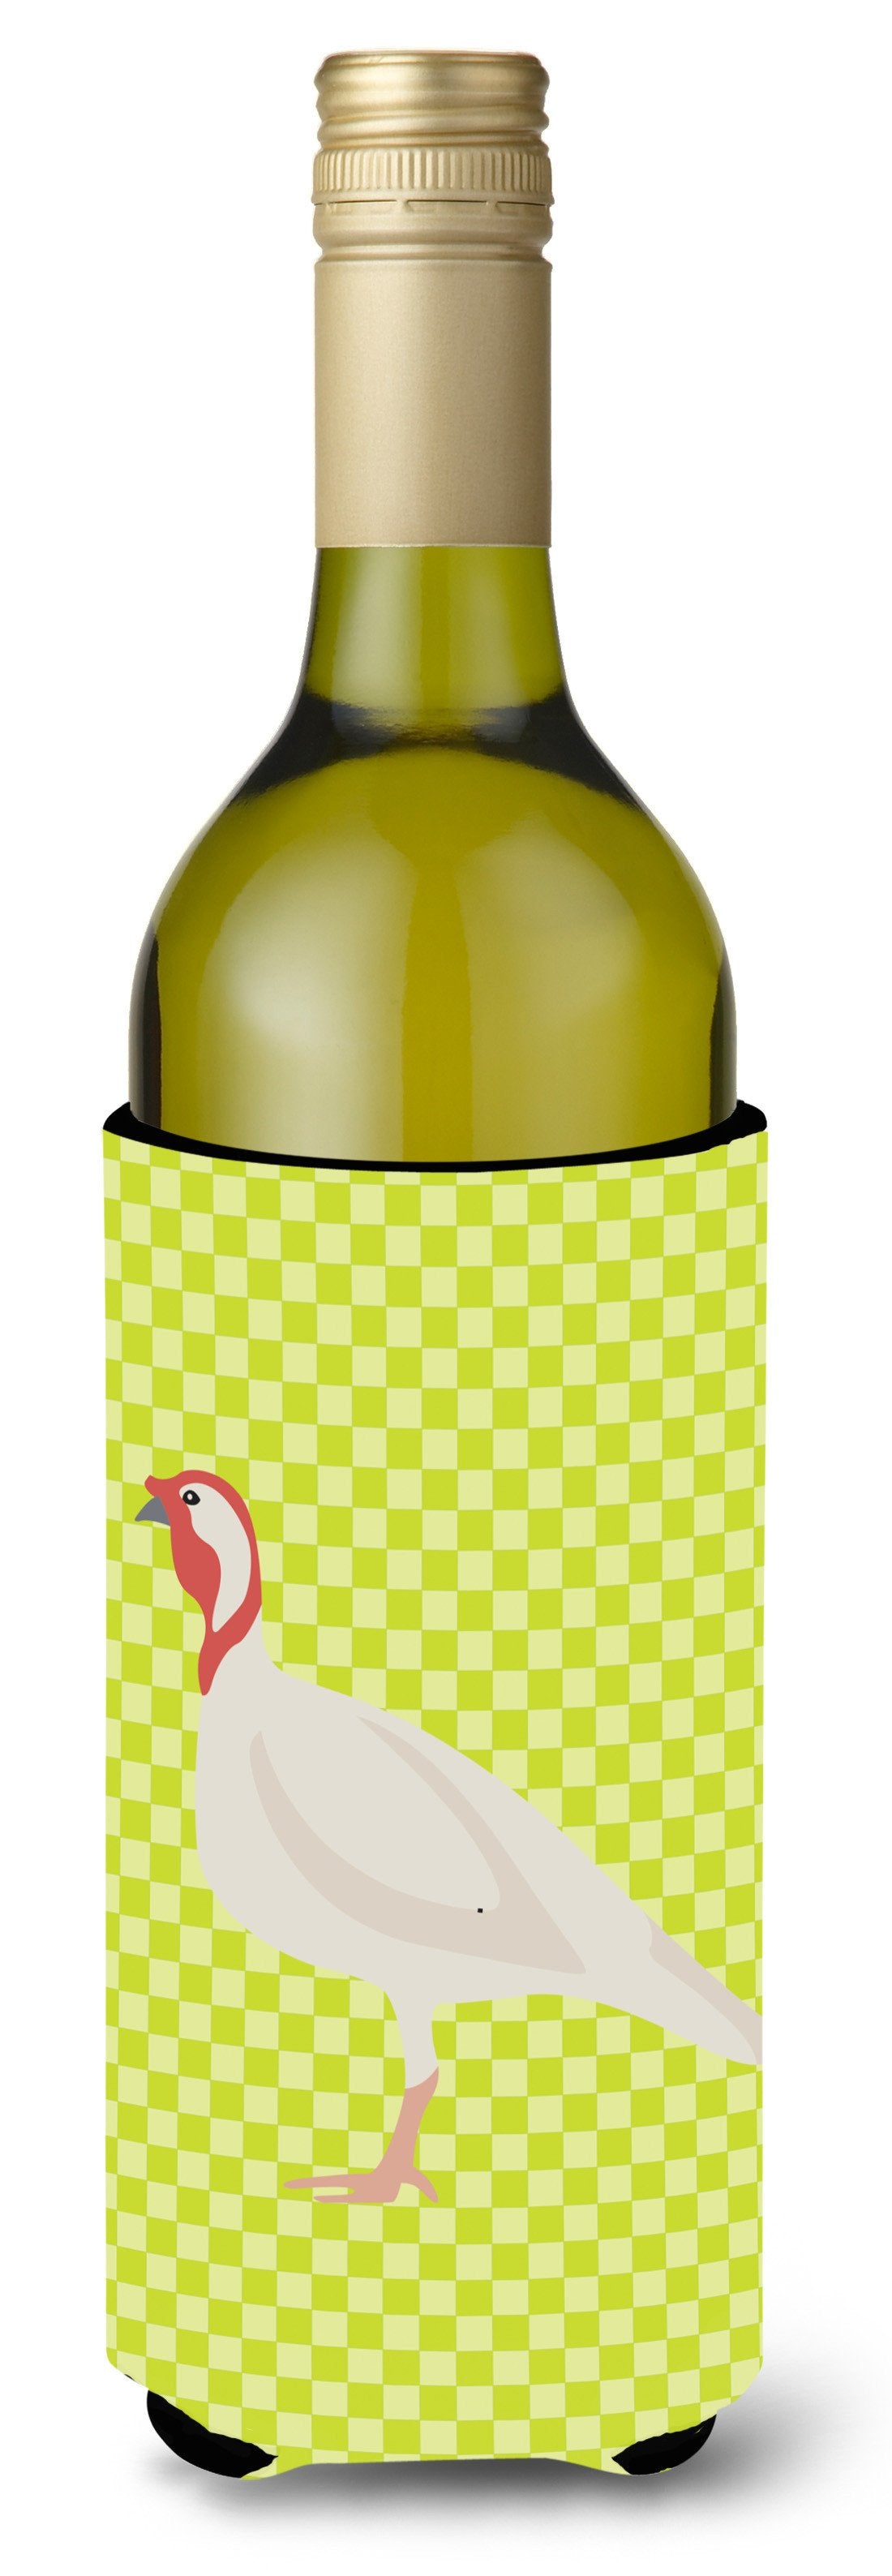 Beltsville Small White Turkey Hen Green Wine Bottle Beverge Insulator Hugger BB7815LITERK by Caroline's Treasures